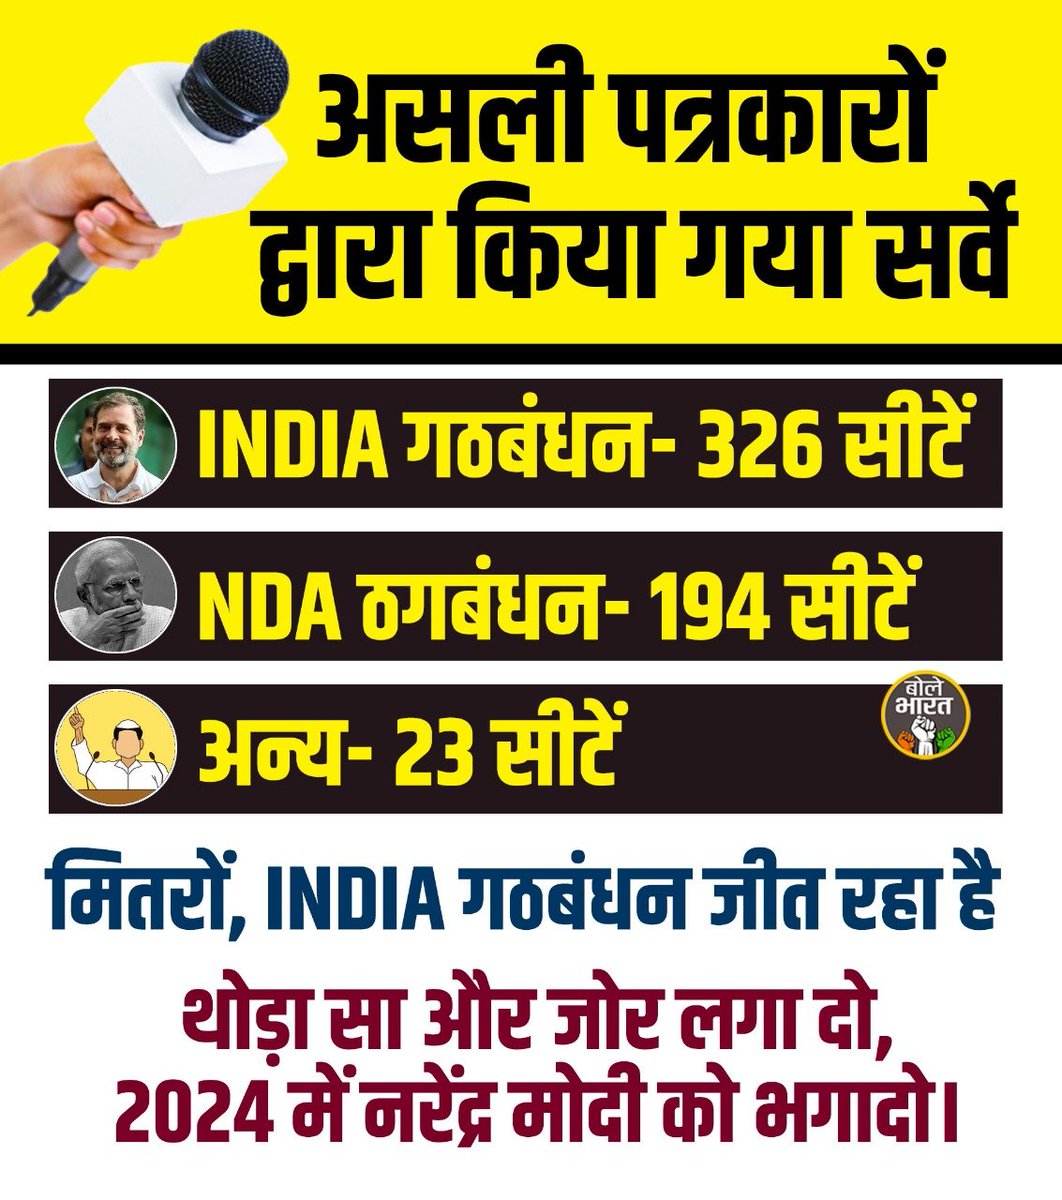 थोड़ा सा और जोर लगा दो, 2024 में नरेंद्र मोदी को भगादो !

#LokSabaElection2024 #Congress #BJP #RahulGandhi #Jumlebaaj